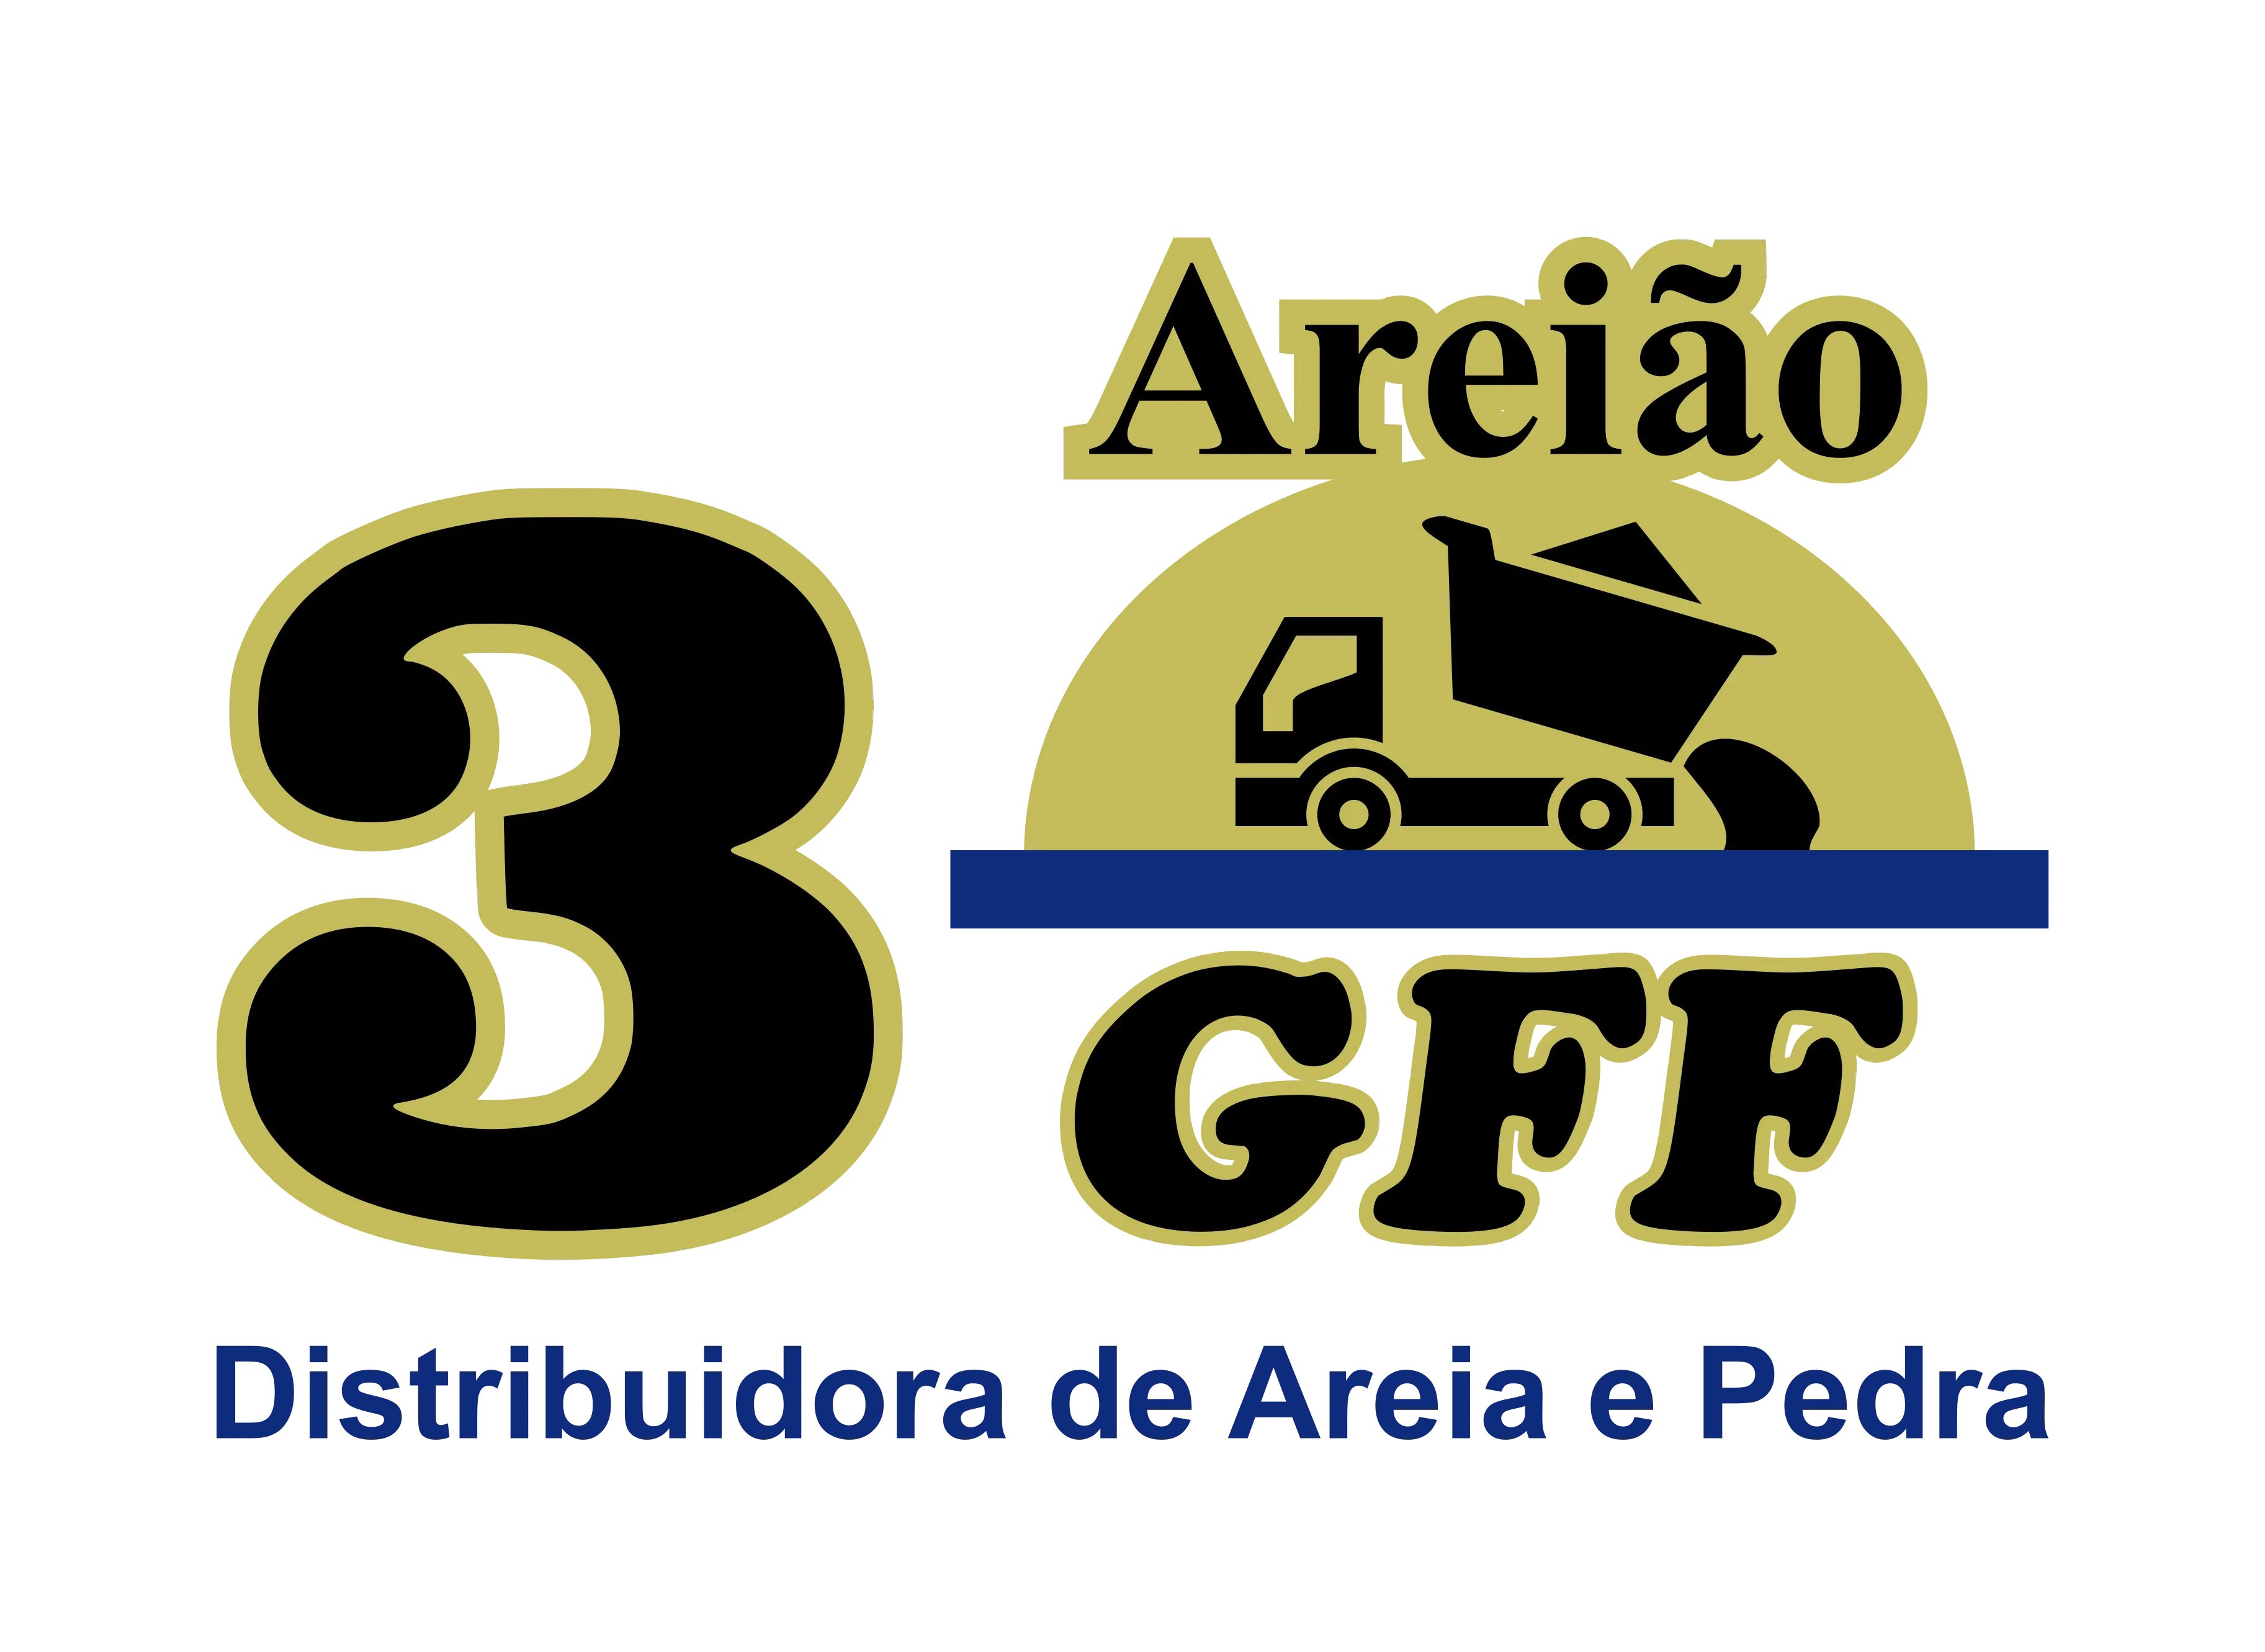 Areião 3 GFF Logo